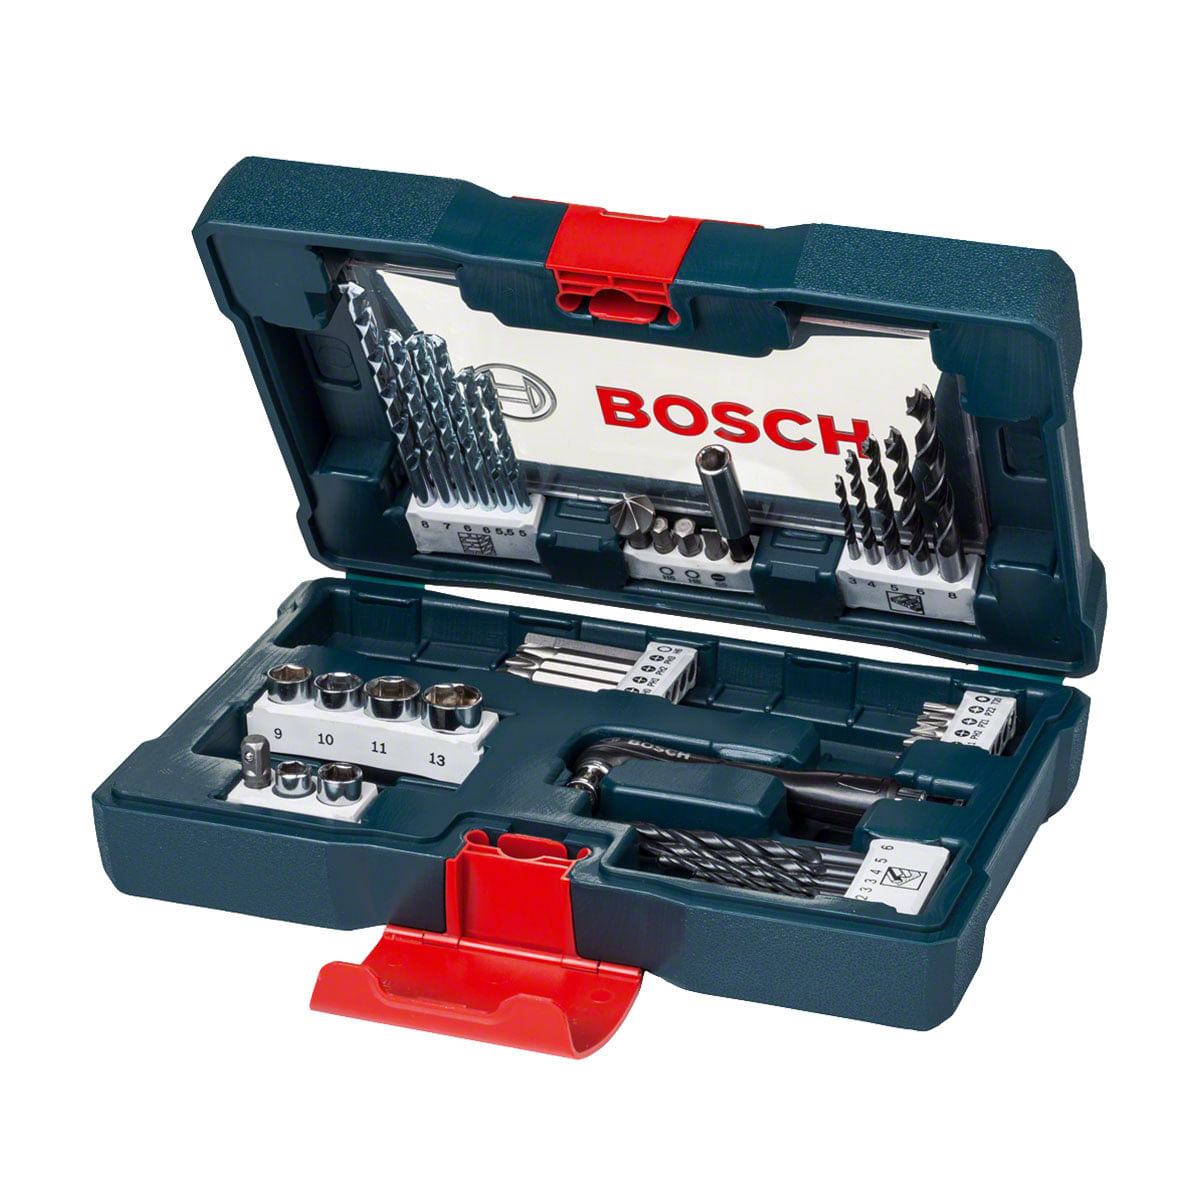 5522129_Jogo-de-Brocas-e-Bits-Bosch-41-Pecas-X-Line-2607017396-000_3_Zoom